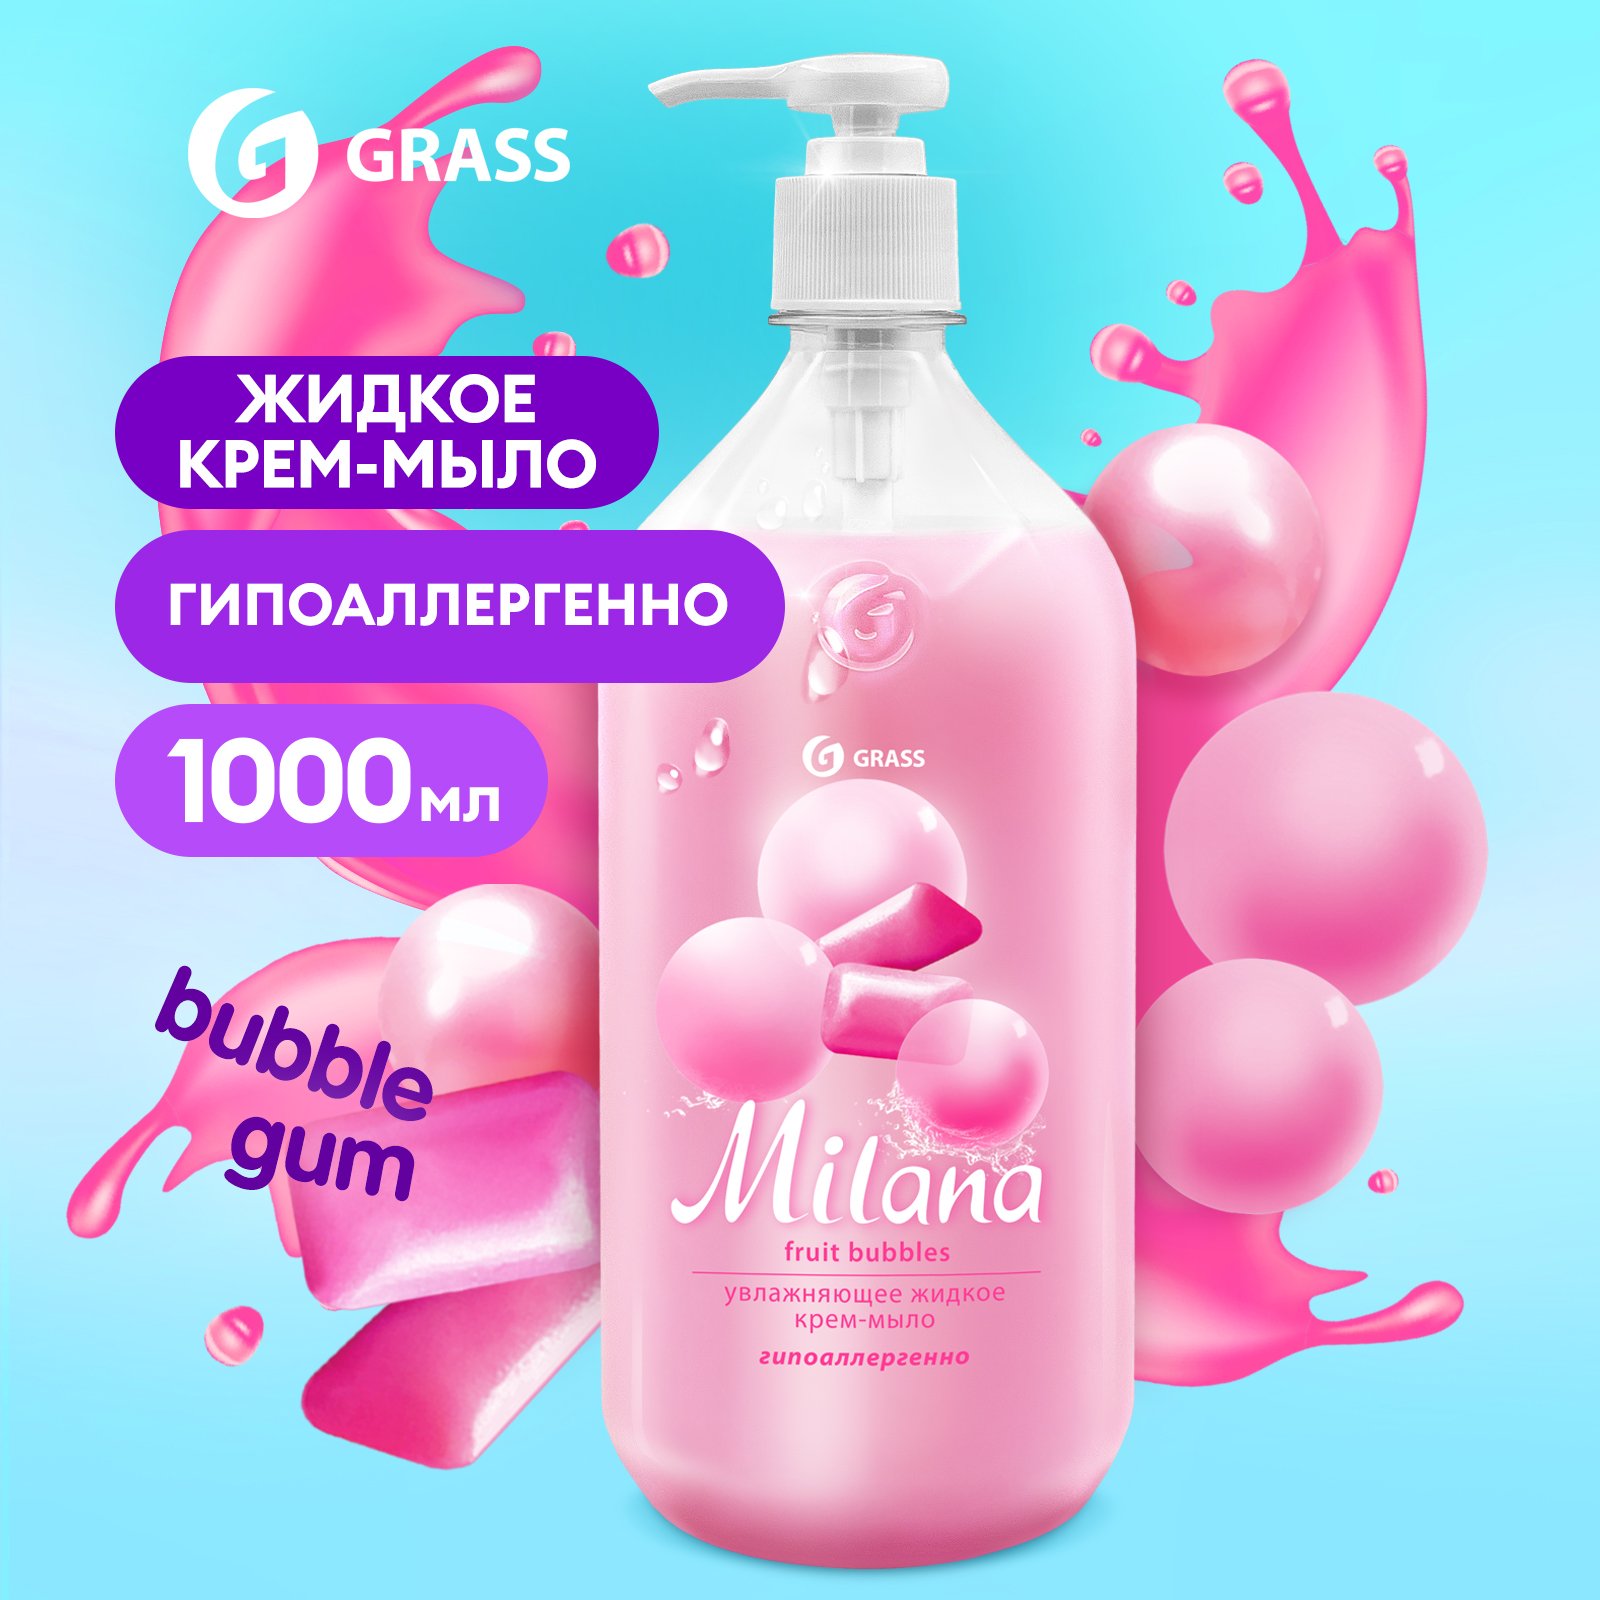 Мыло жидкое для рук Grass Milana Fruit Bubbles туалетное, густое, гипоаллергенное 1 л жидкое мыло для рук grass milana fruit bubbles 1л густое туалетное гипоаллергенное